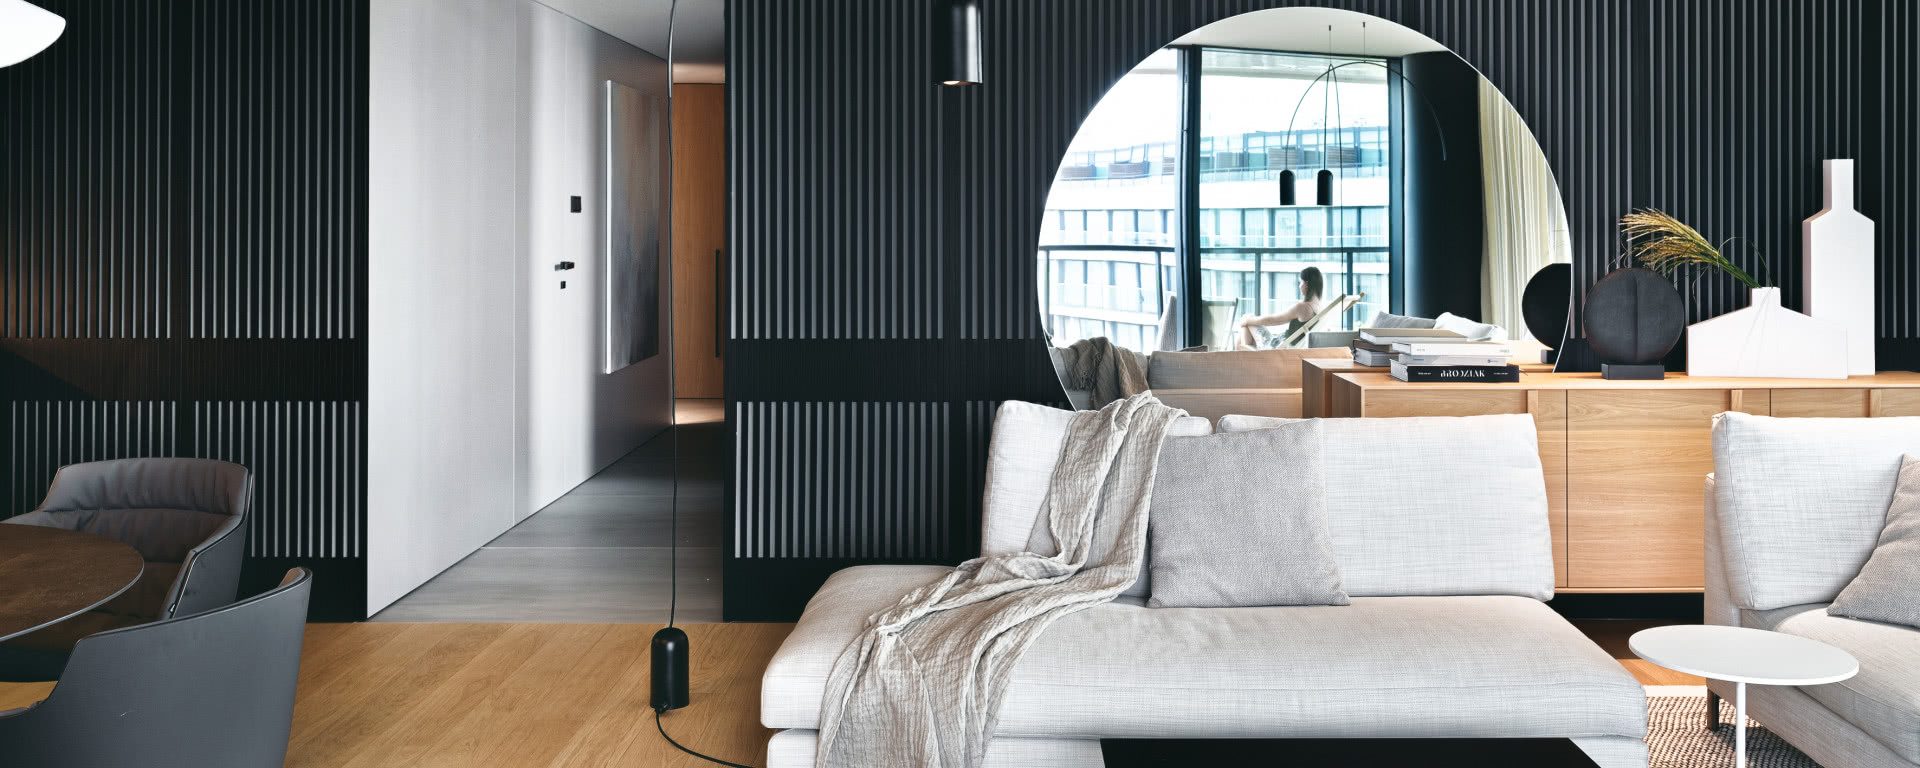 Luksus na wynajem - minimalistyczny apartament w Kołobrzegu